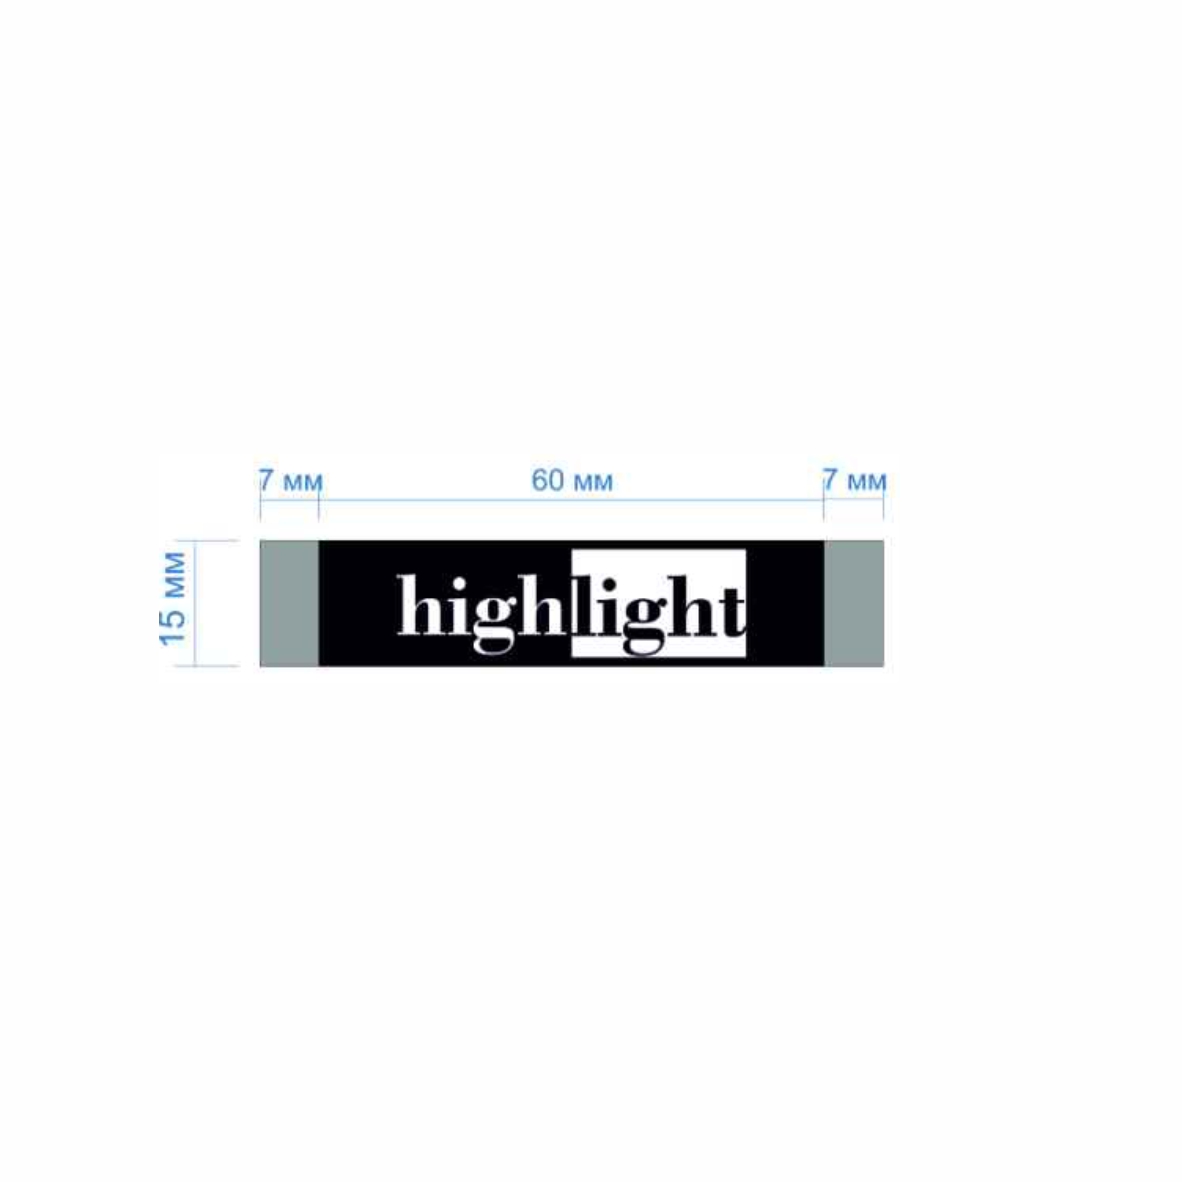 Этикетка тканевая High Light 1,5см черная и белый лого /70 atki/, шт. Вышивка / этикетка тканевая